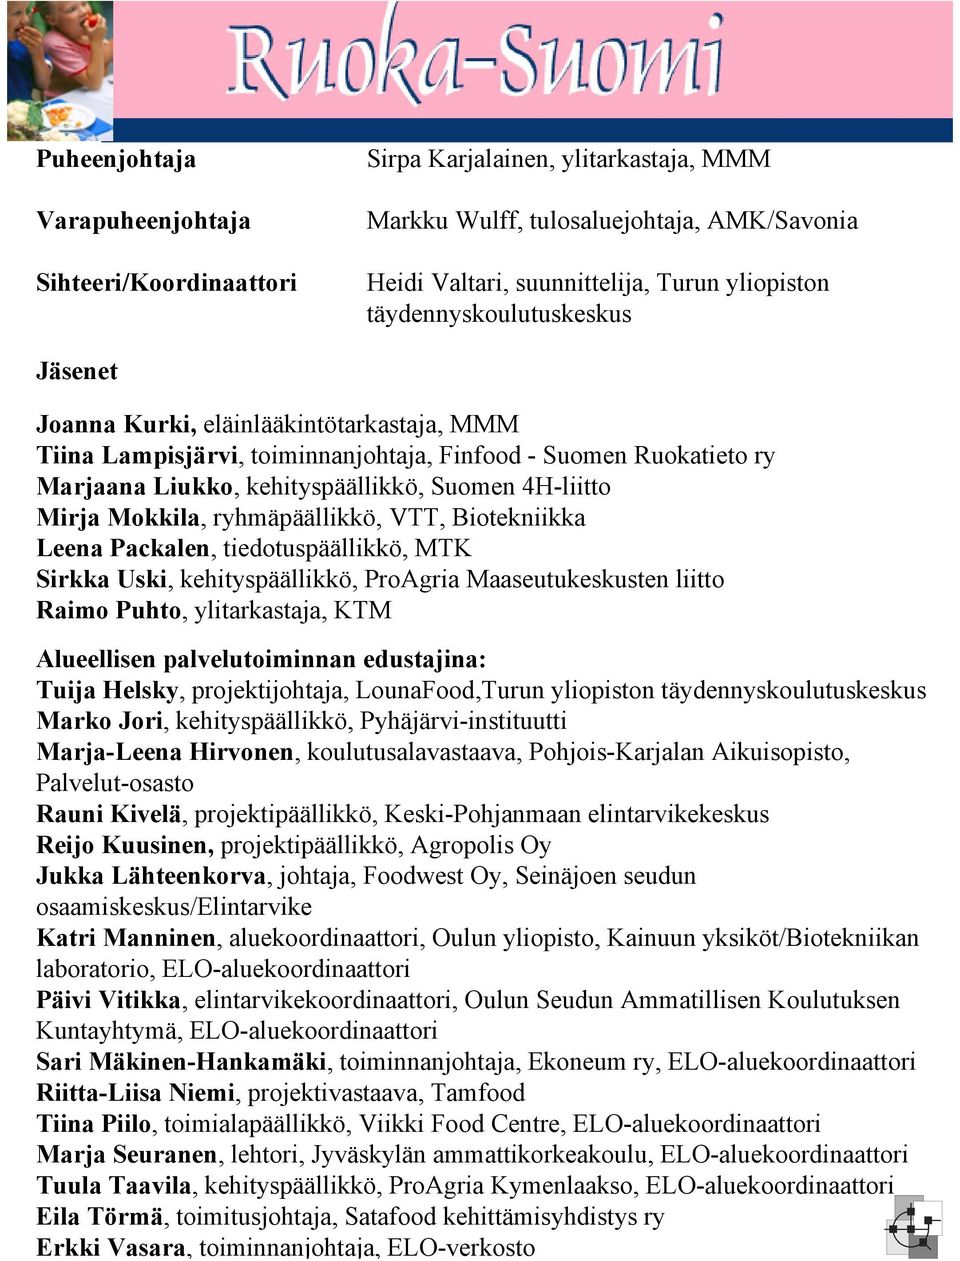 Lähteenkorva, johtaja, Foodwest Oy, Seinäjoen seudun osaamiskeskus/elintarvike Katri Manninen, aluekoordinaattori, Oulun yliopisto, Kainuun yksiköt/biotekniikan laboratorio, ELO-aluekoordinaattori